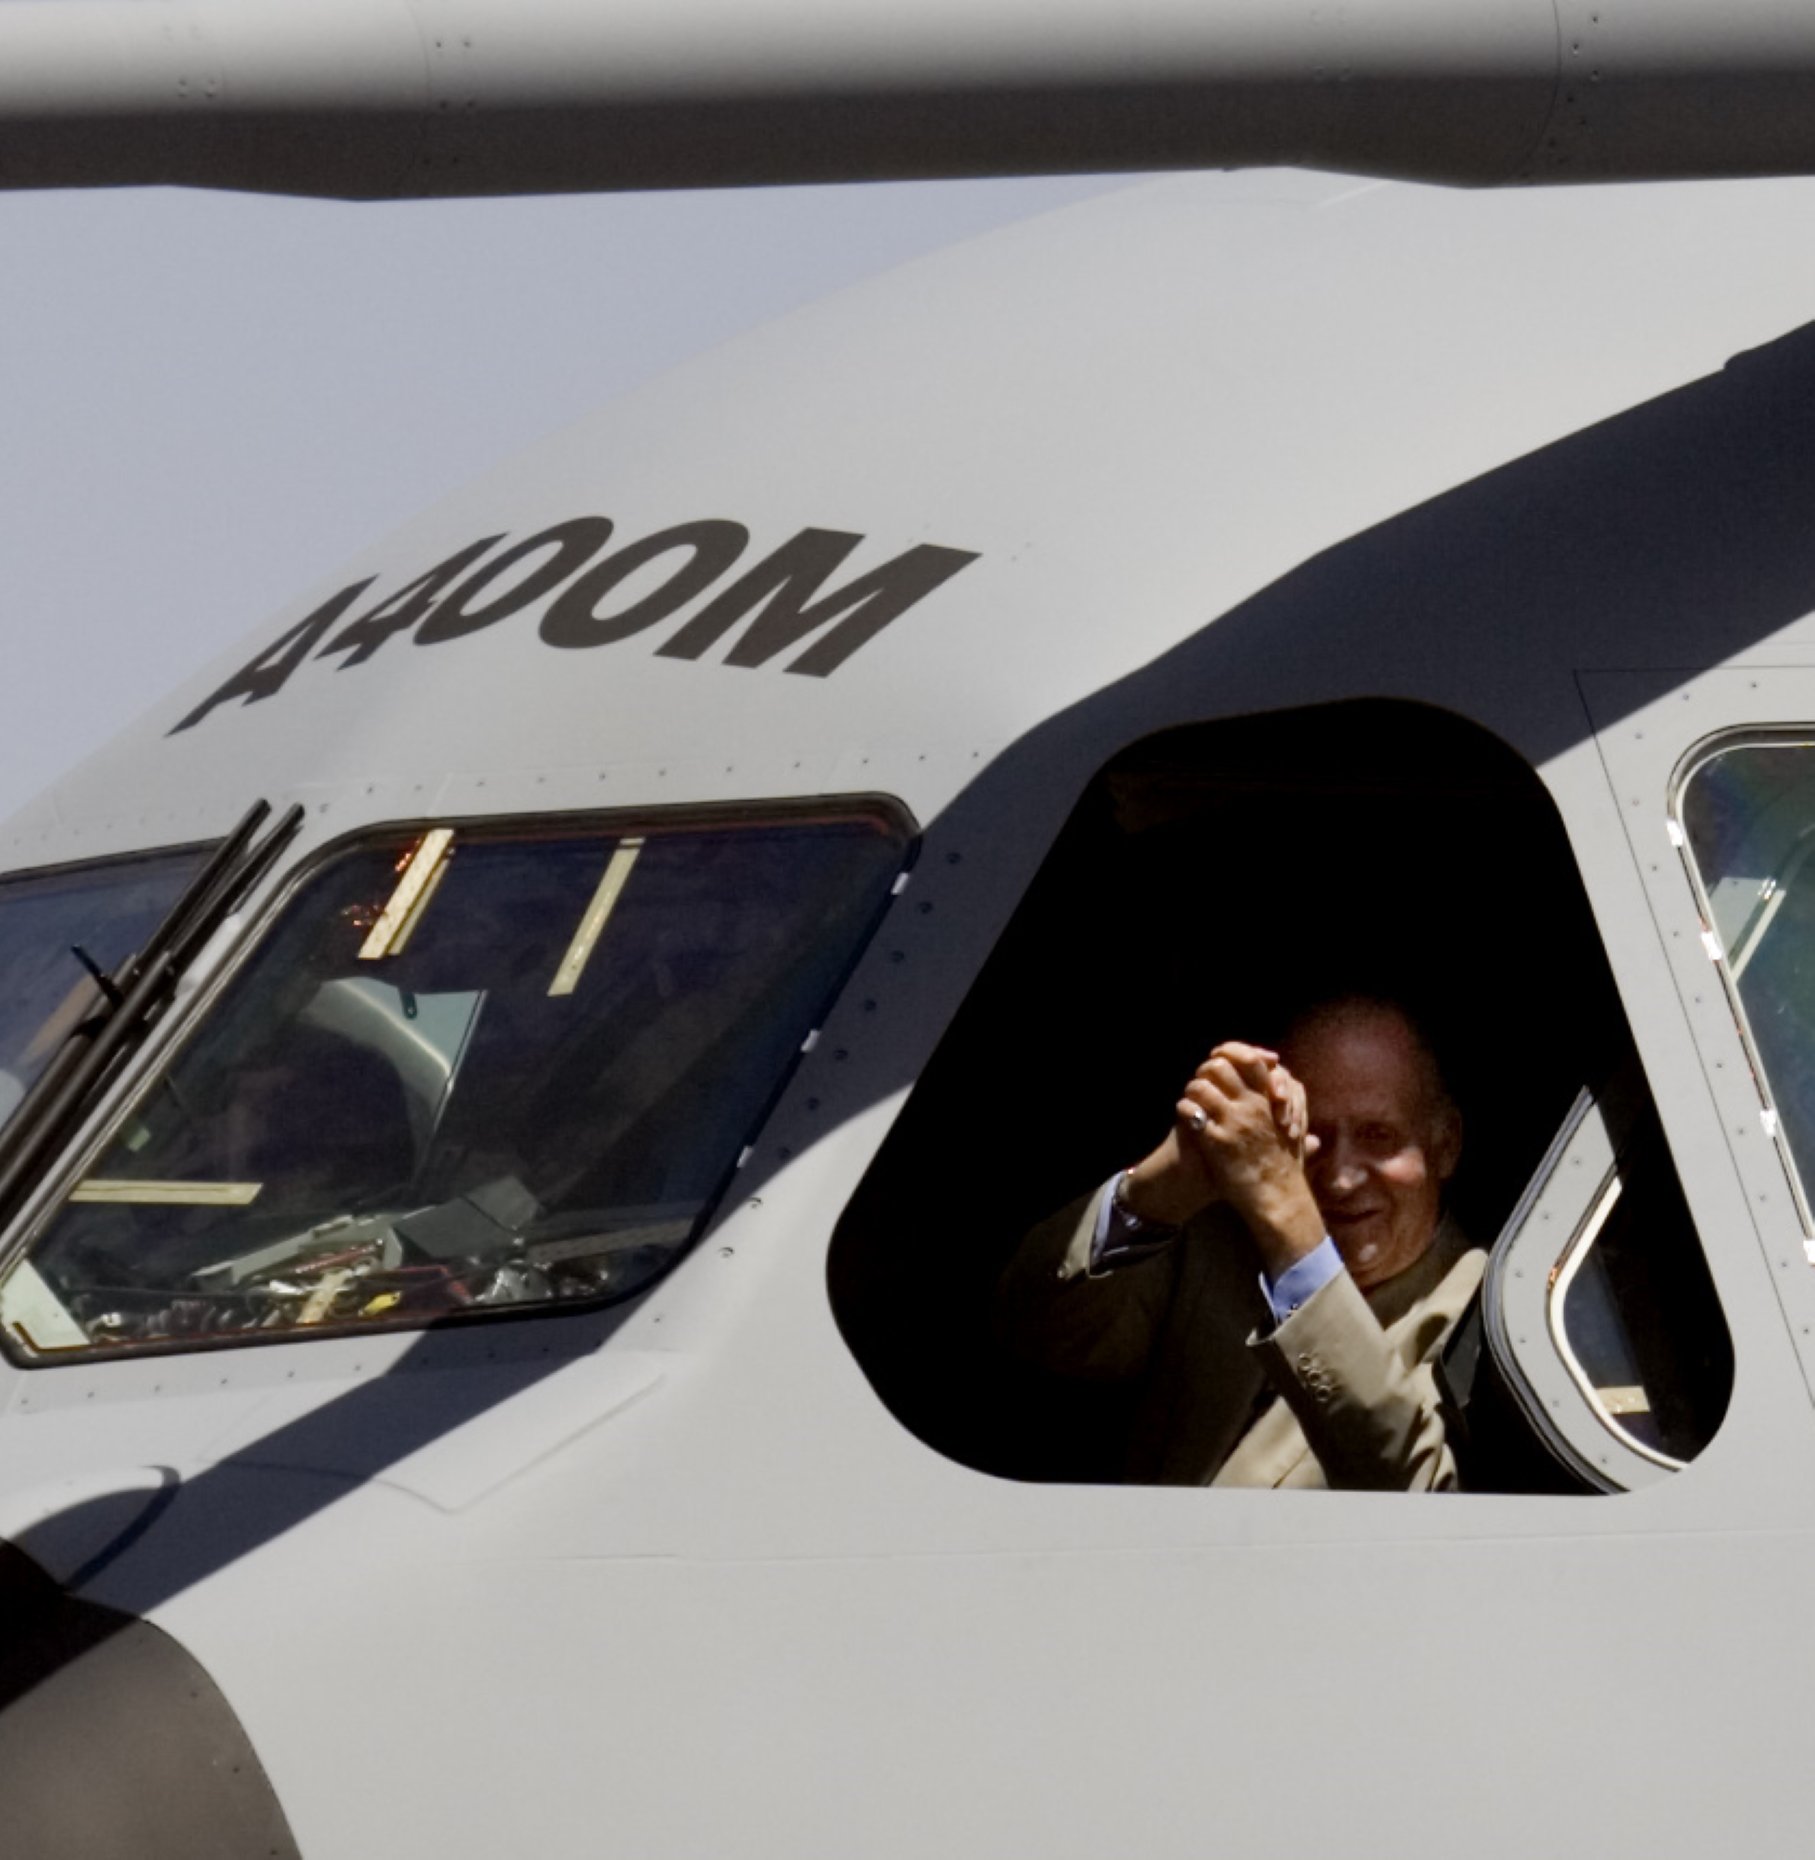 Temeridad de Juan Carlos I en un avión lleno de combustible: "Con dos cojones"